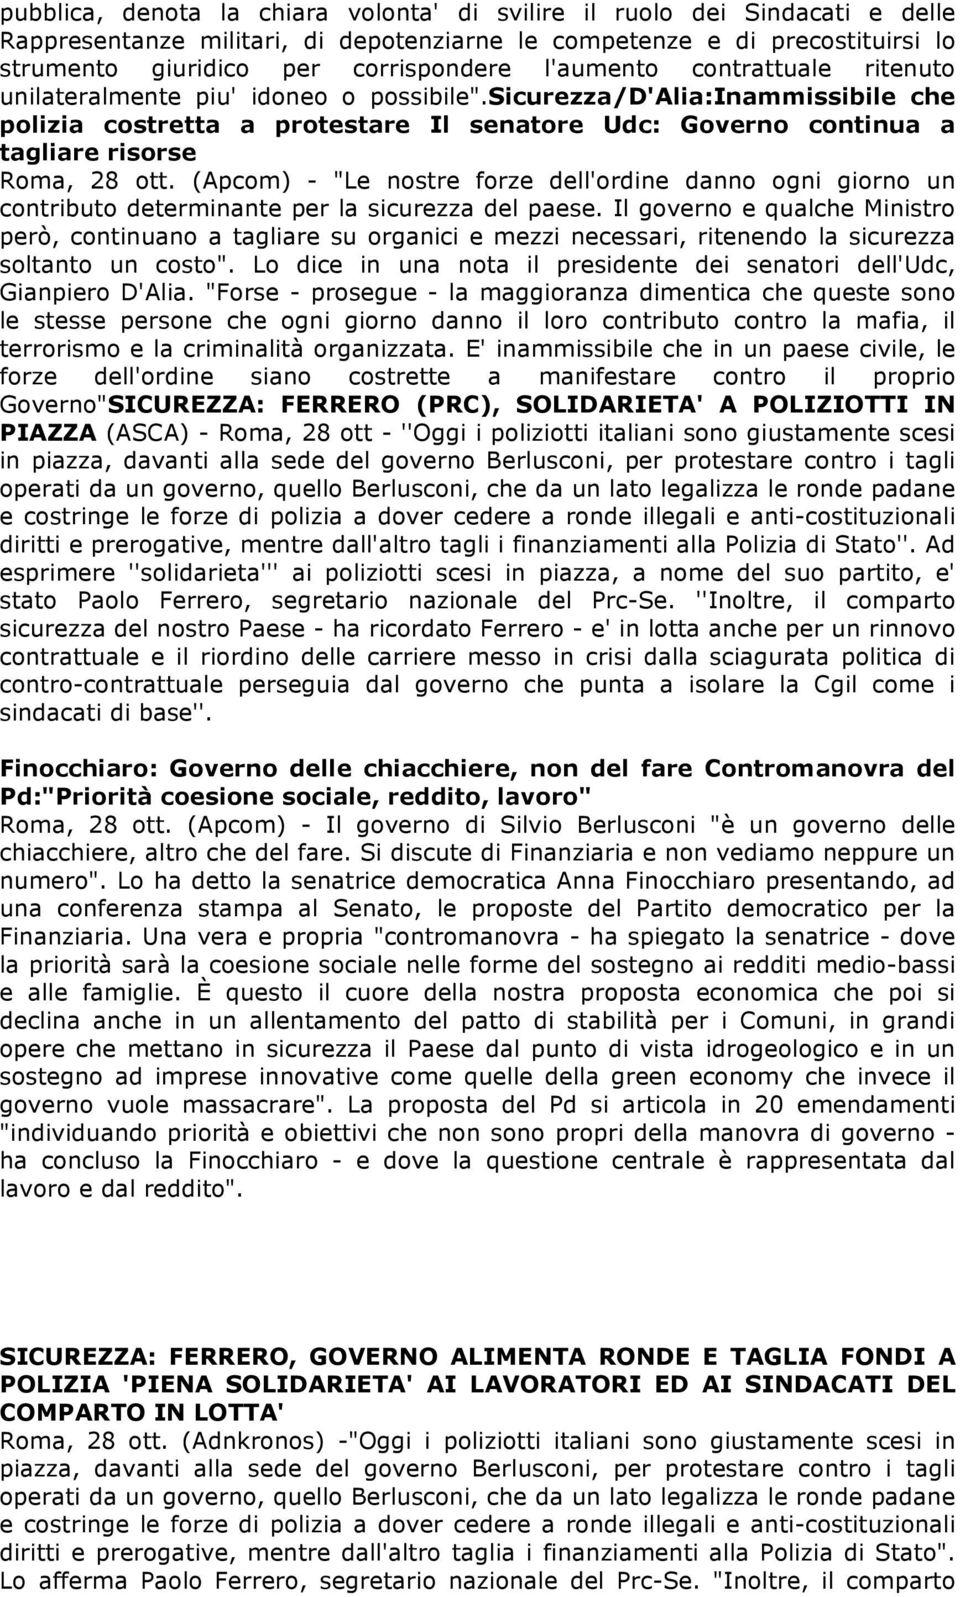 sicurezza/d'alia:inammissibile che polizia costretta a protestare Il senatore Udc: Governo continua a tagliare risorse Roma, 28 ott.